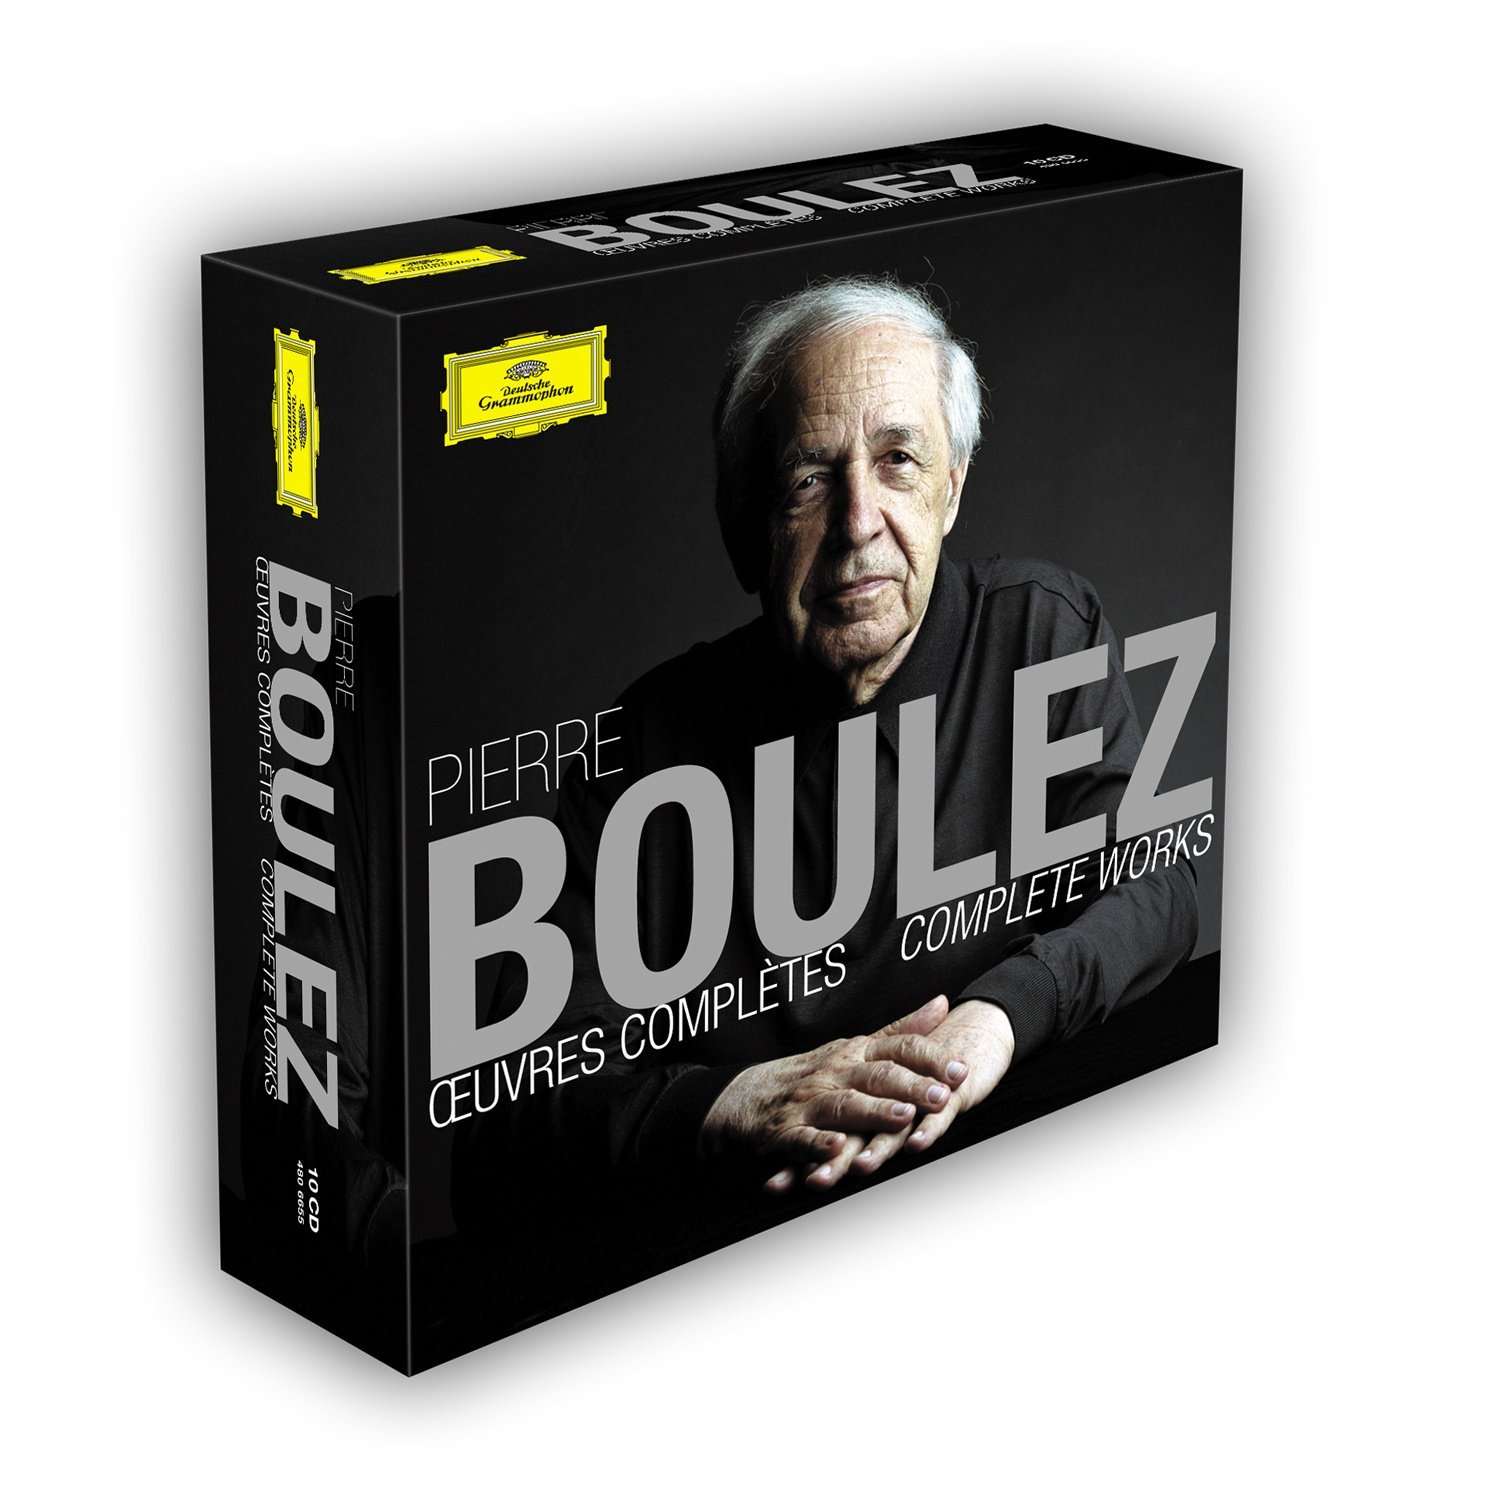 Pierre Boulez's Complete Works